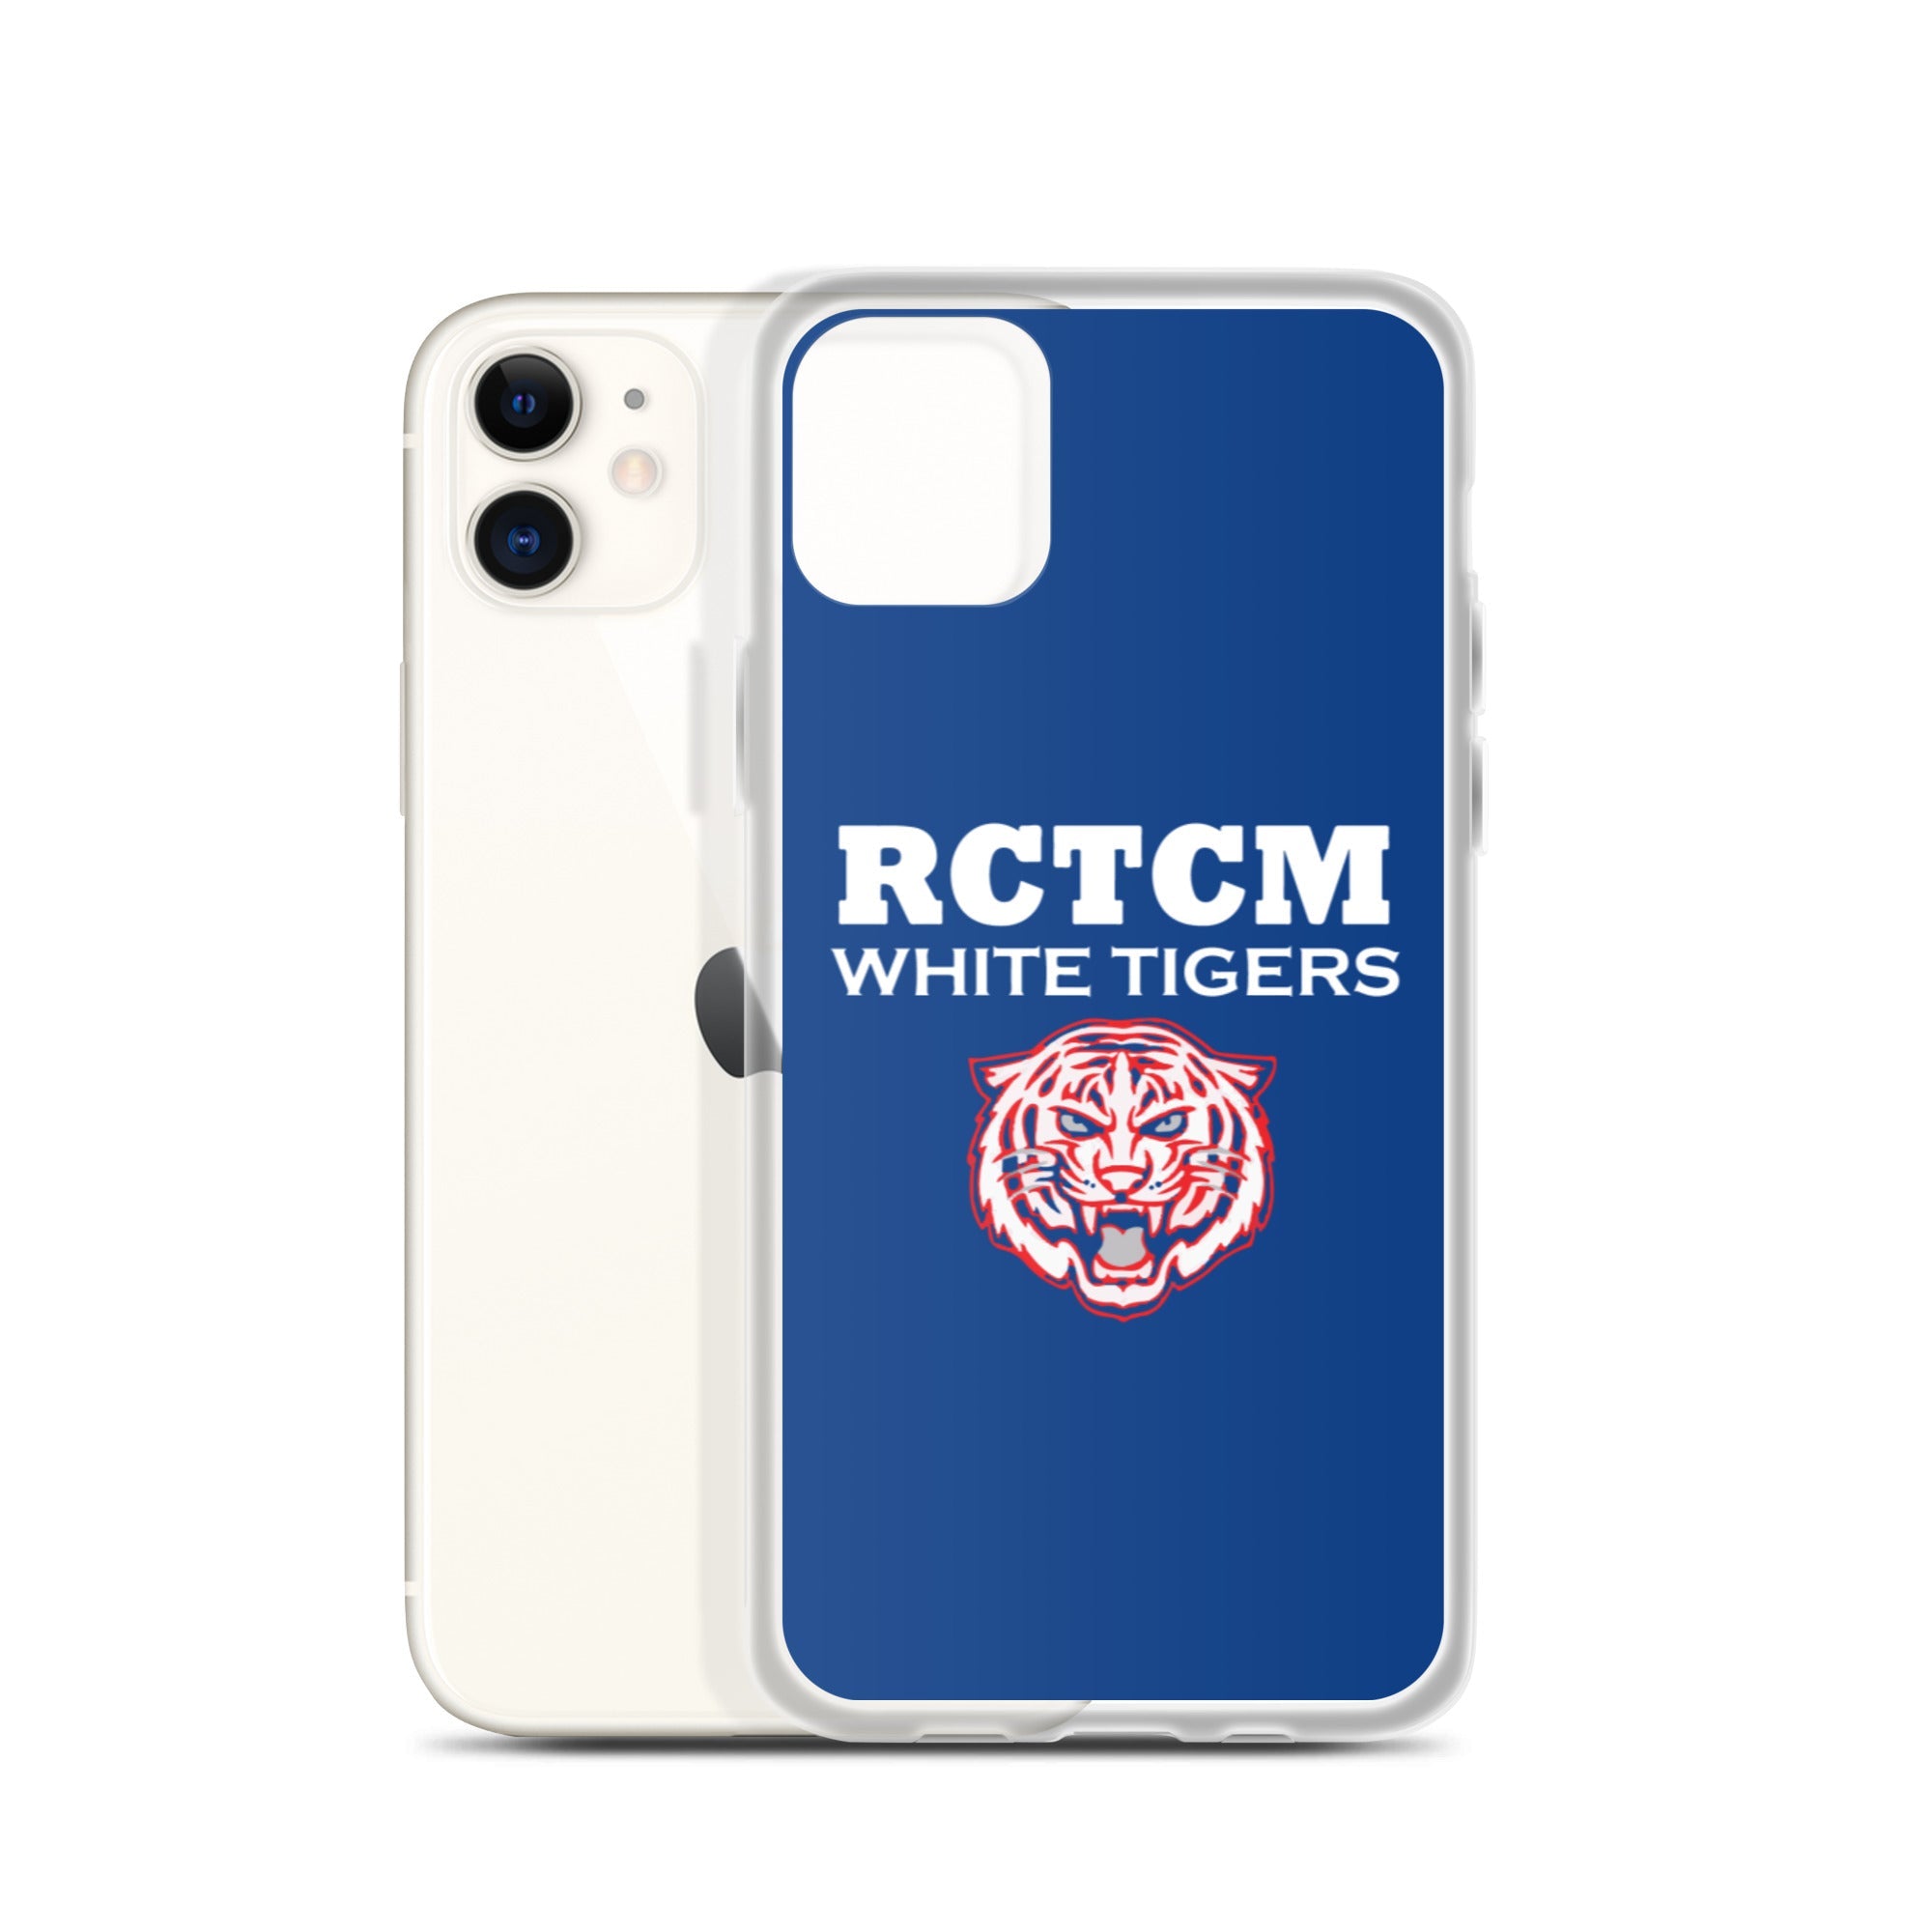 RCTCM iPhone Case